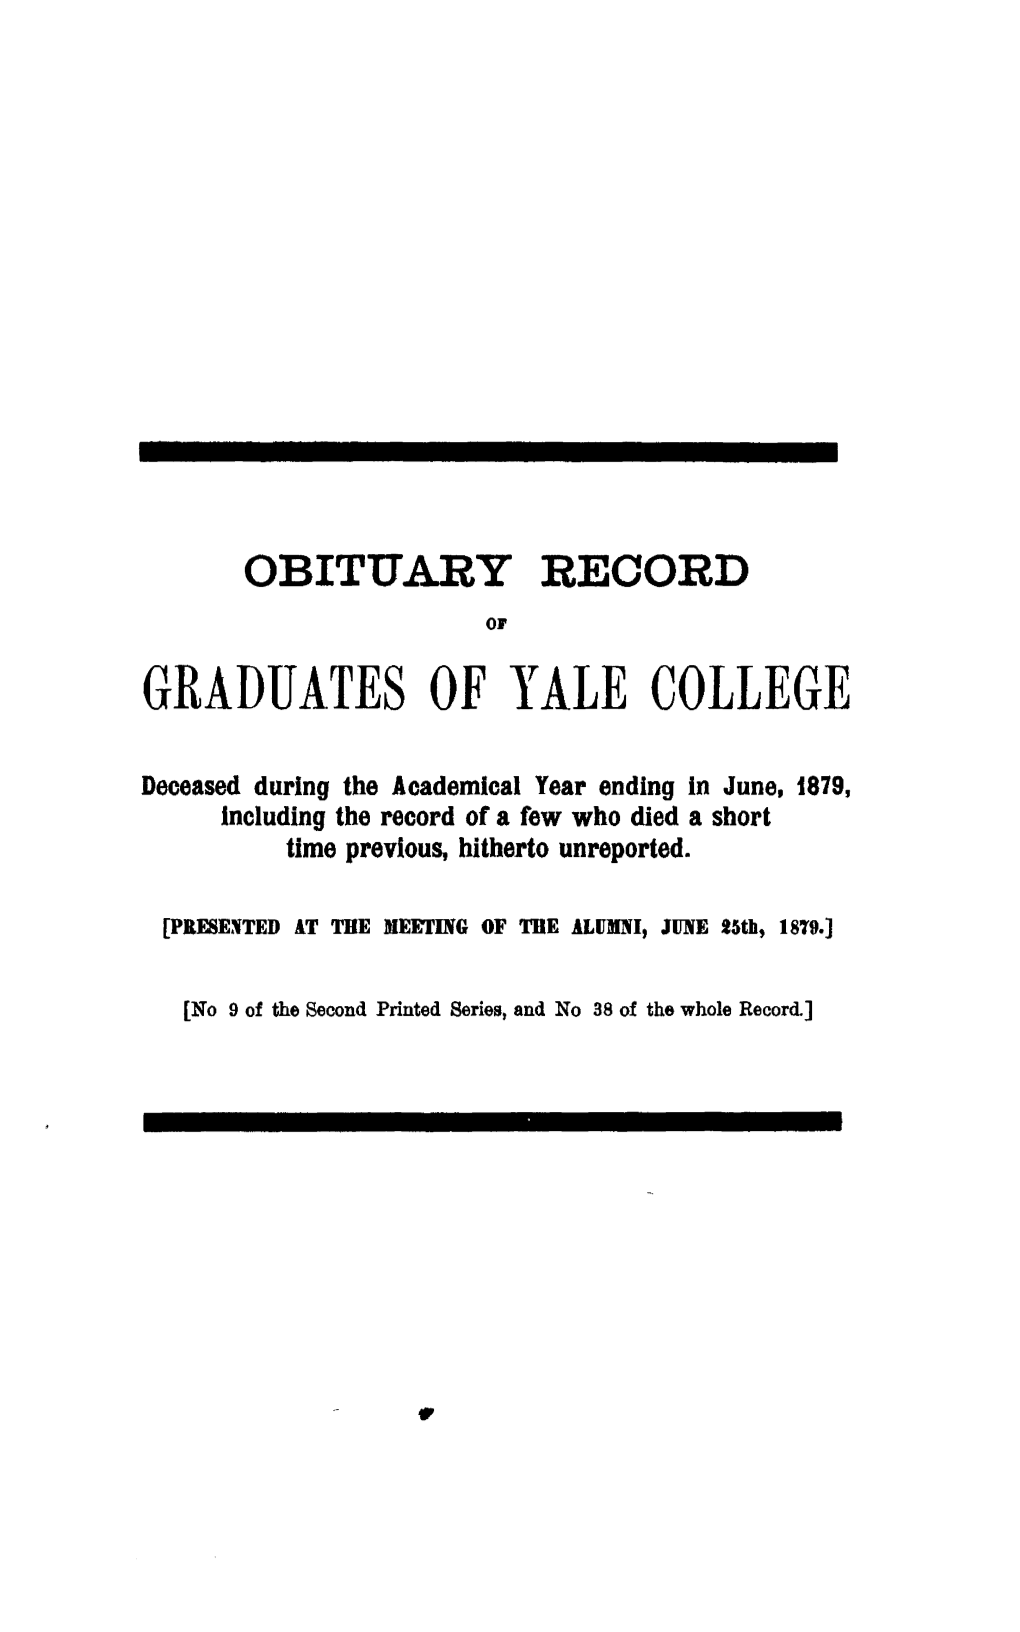 1878-1879 Obituary Record of Graduates of Yale University